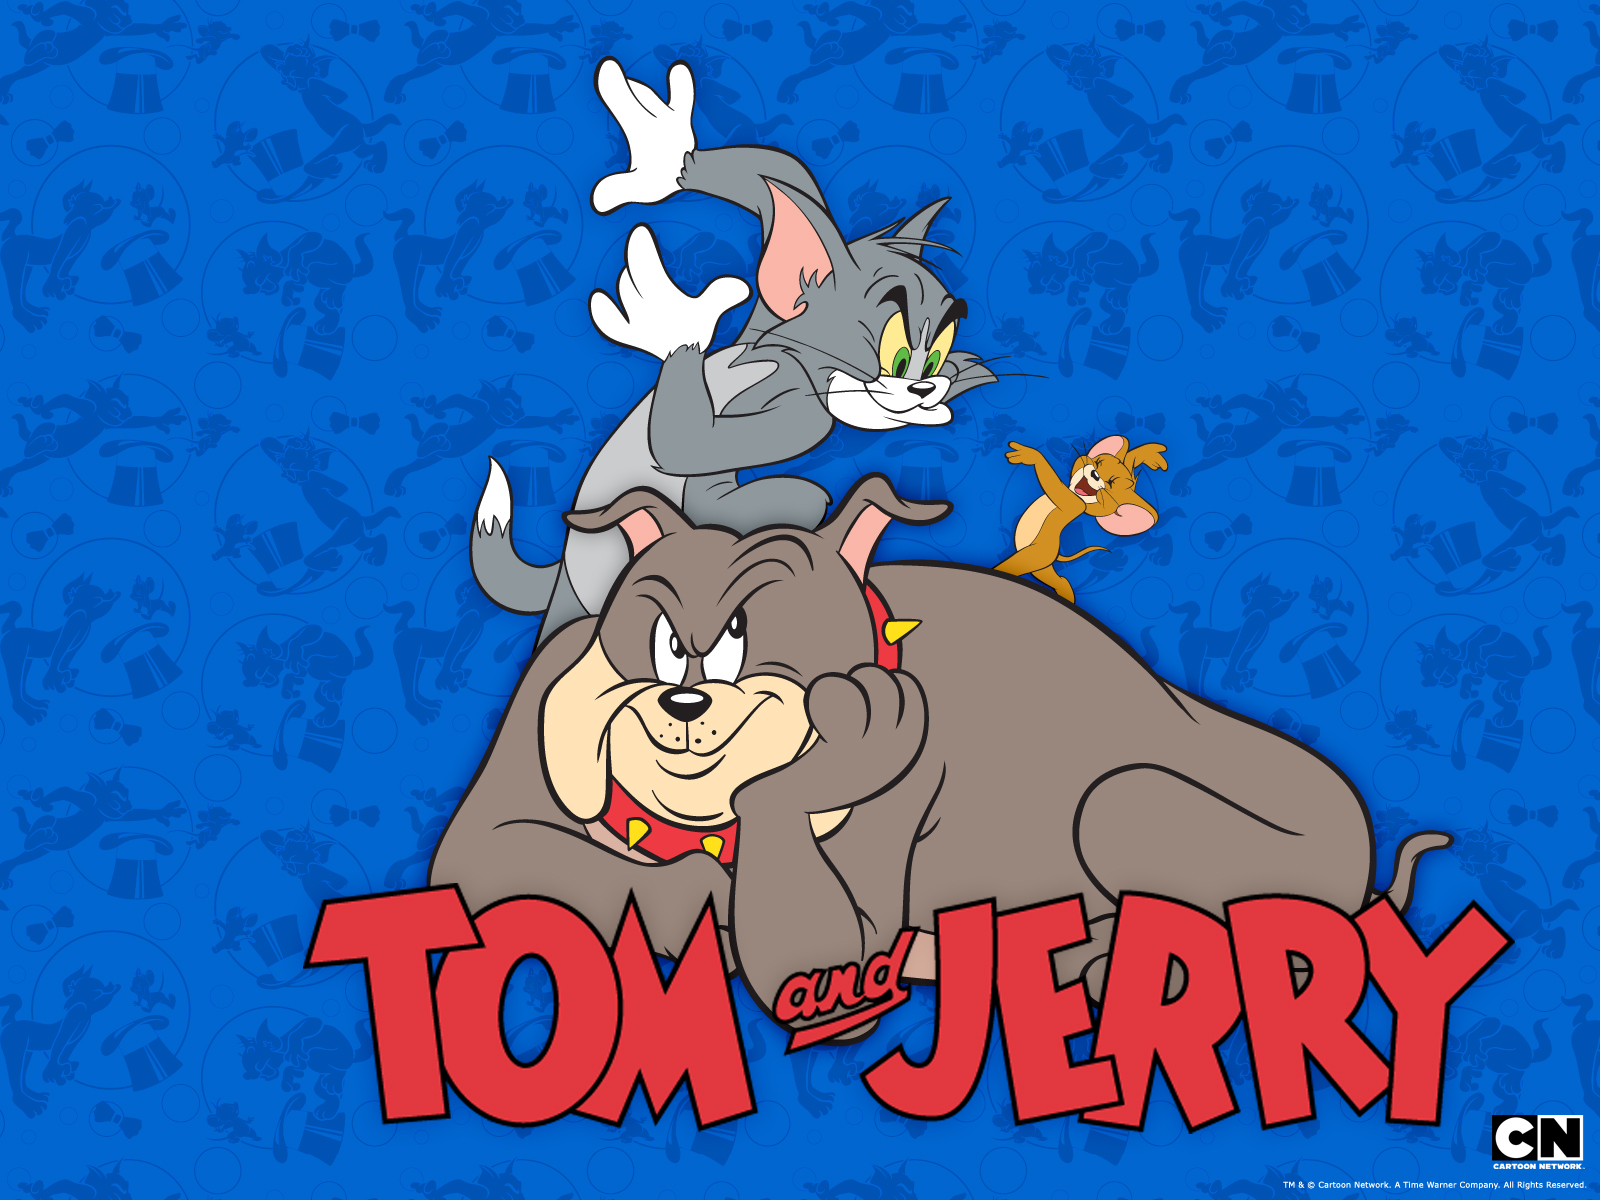 Tom, Jerry and Spike